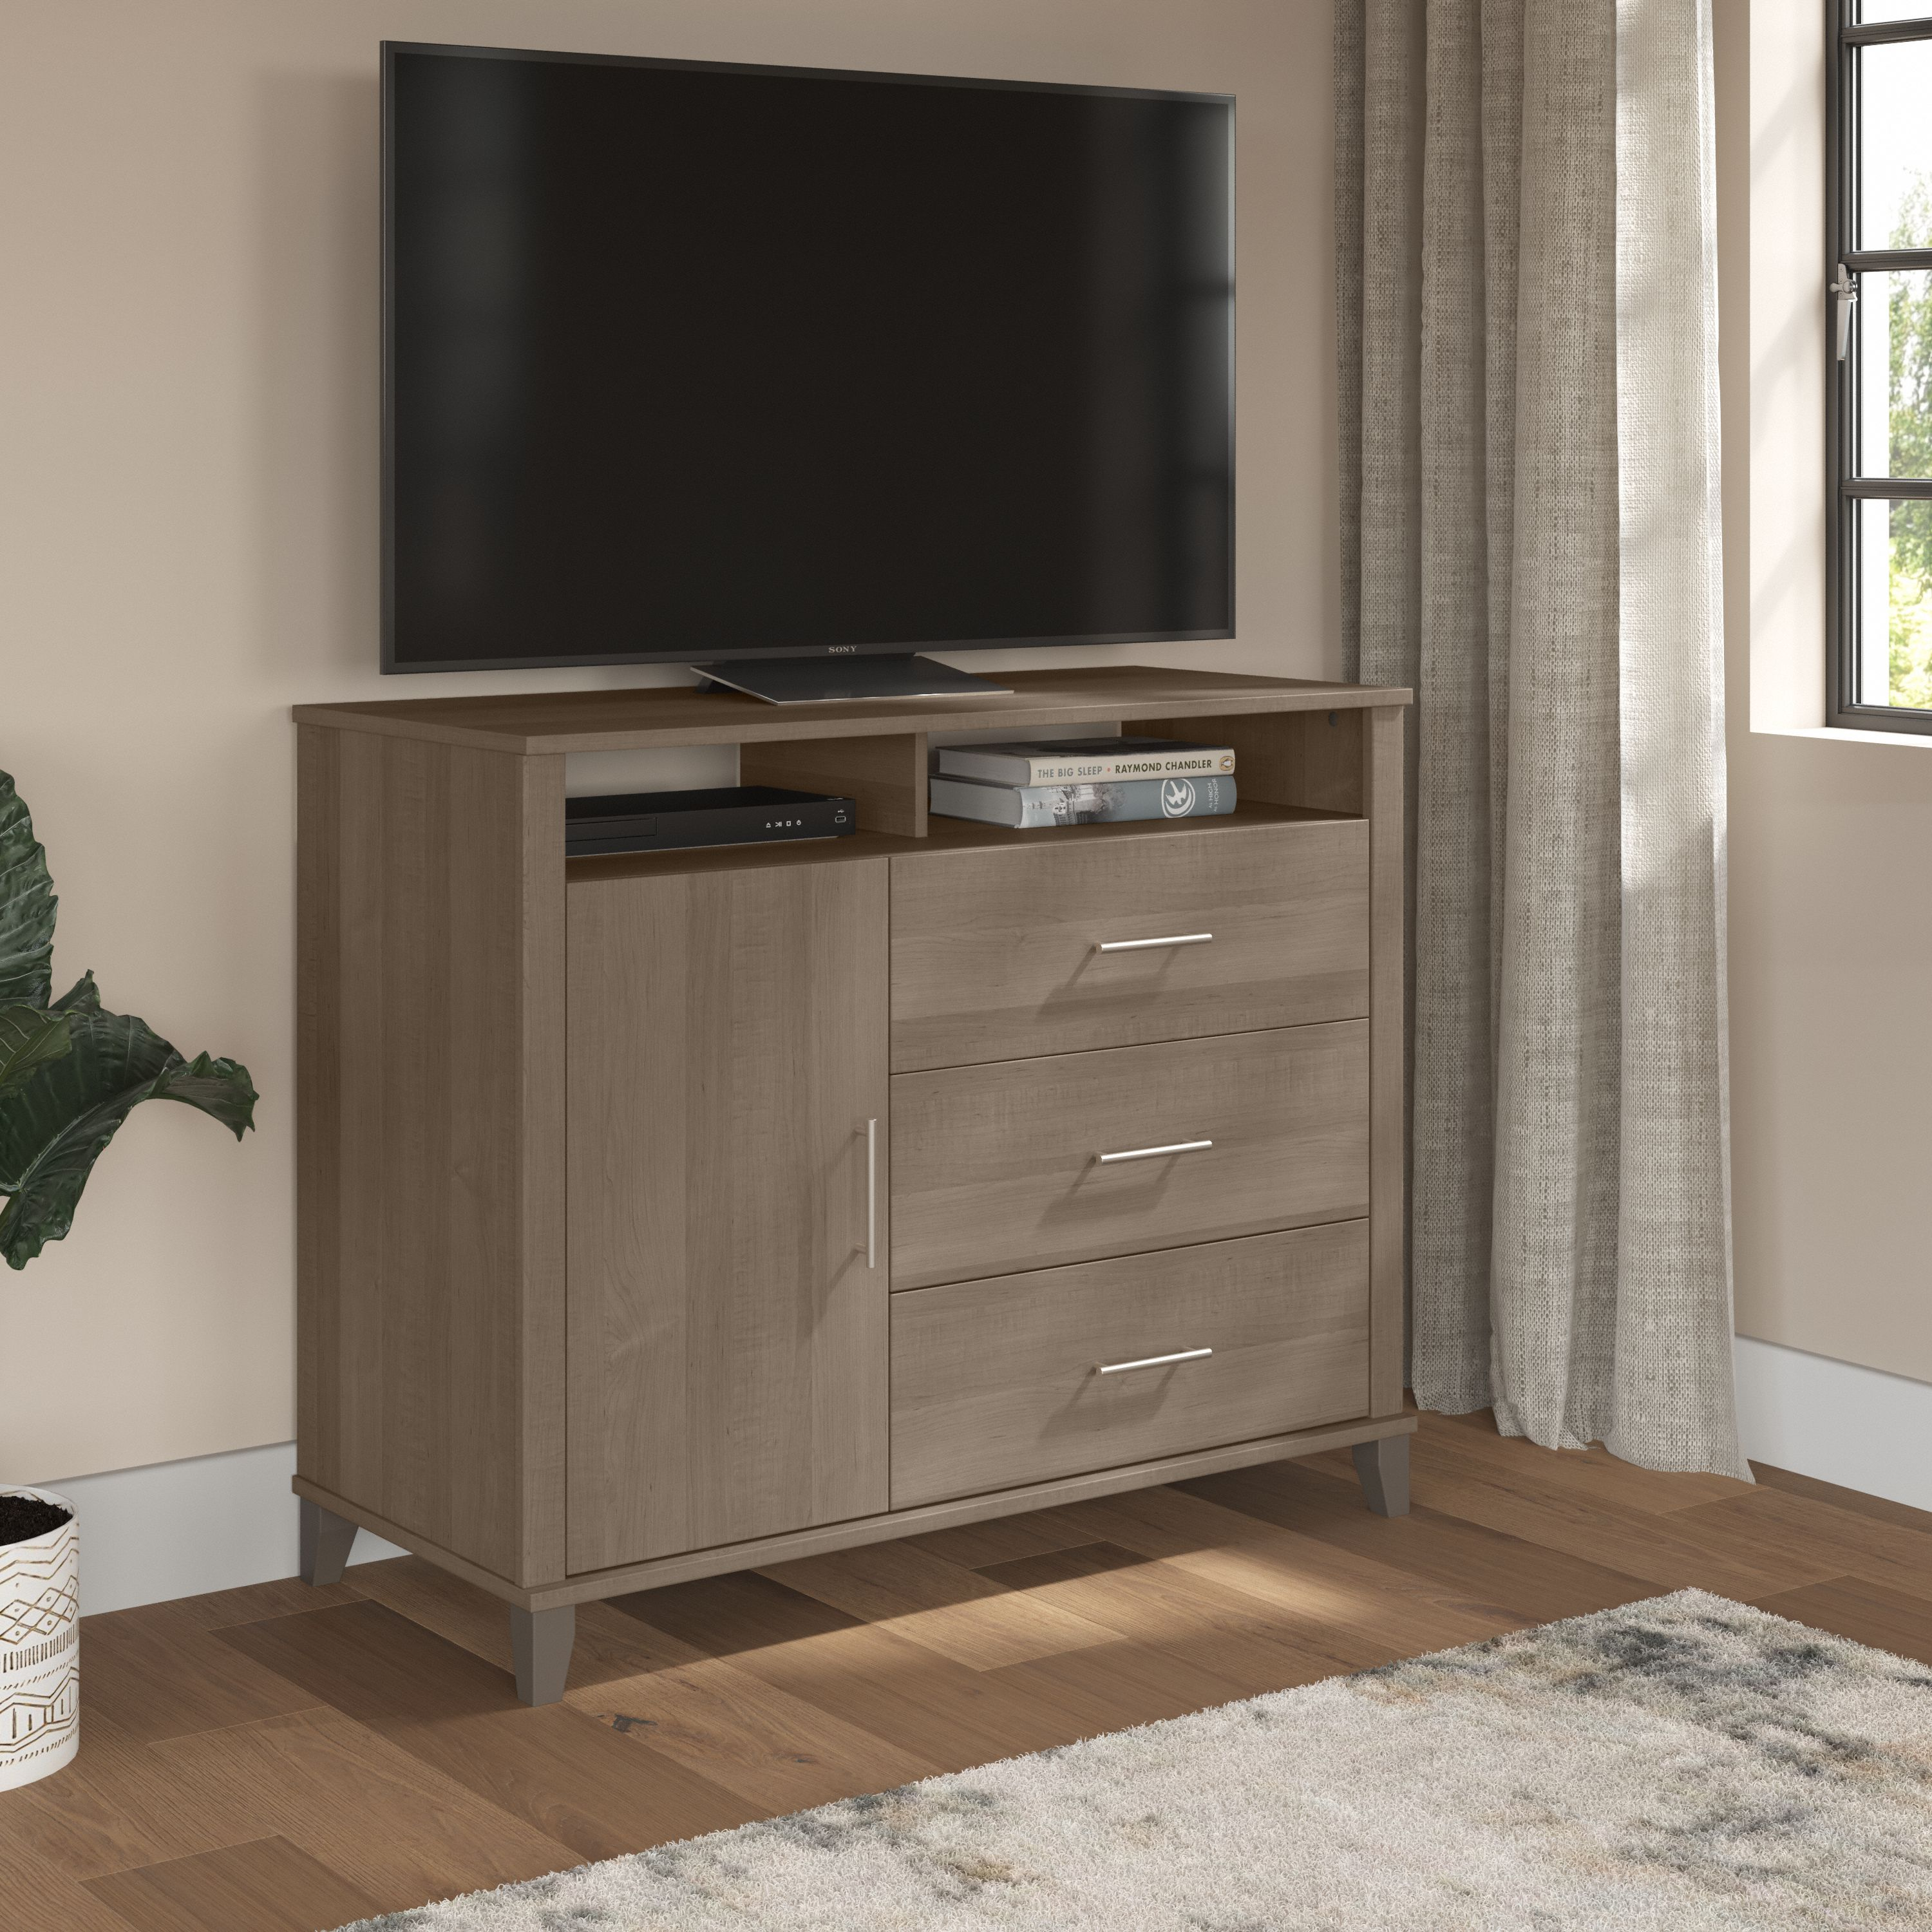 Shop Bush Furniture Somerset 3 Drawer Dresser and Bedroom TV Stand 01 STV148AGK #color_ash gray